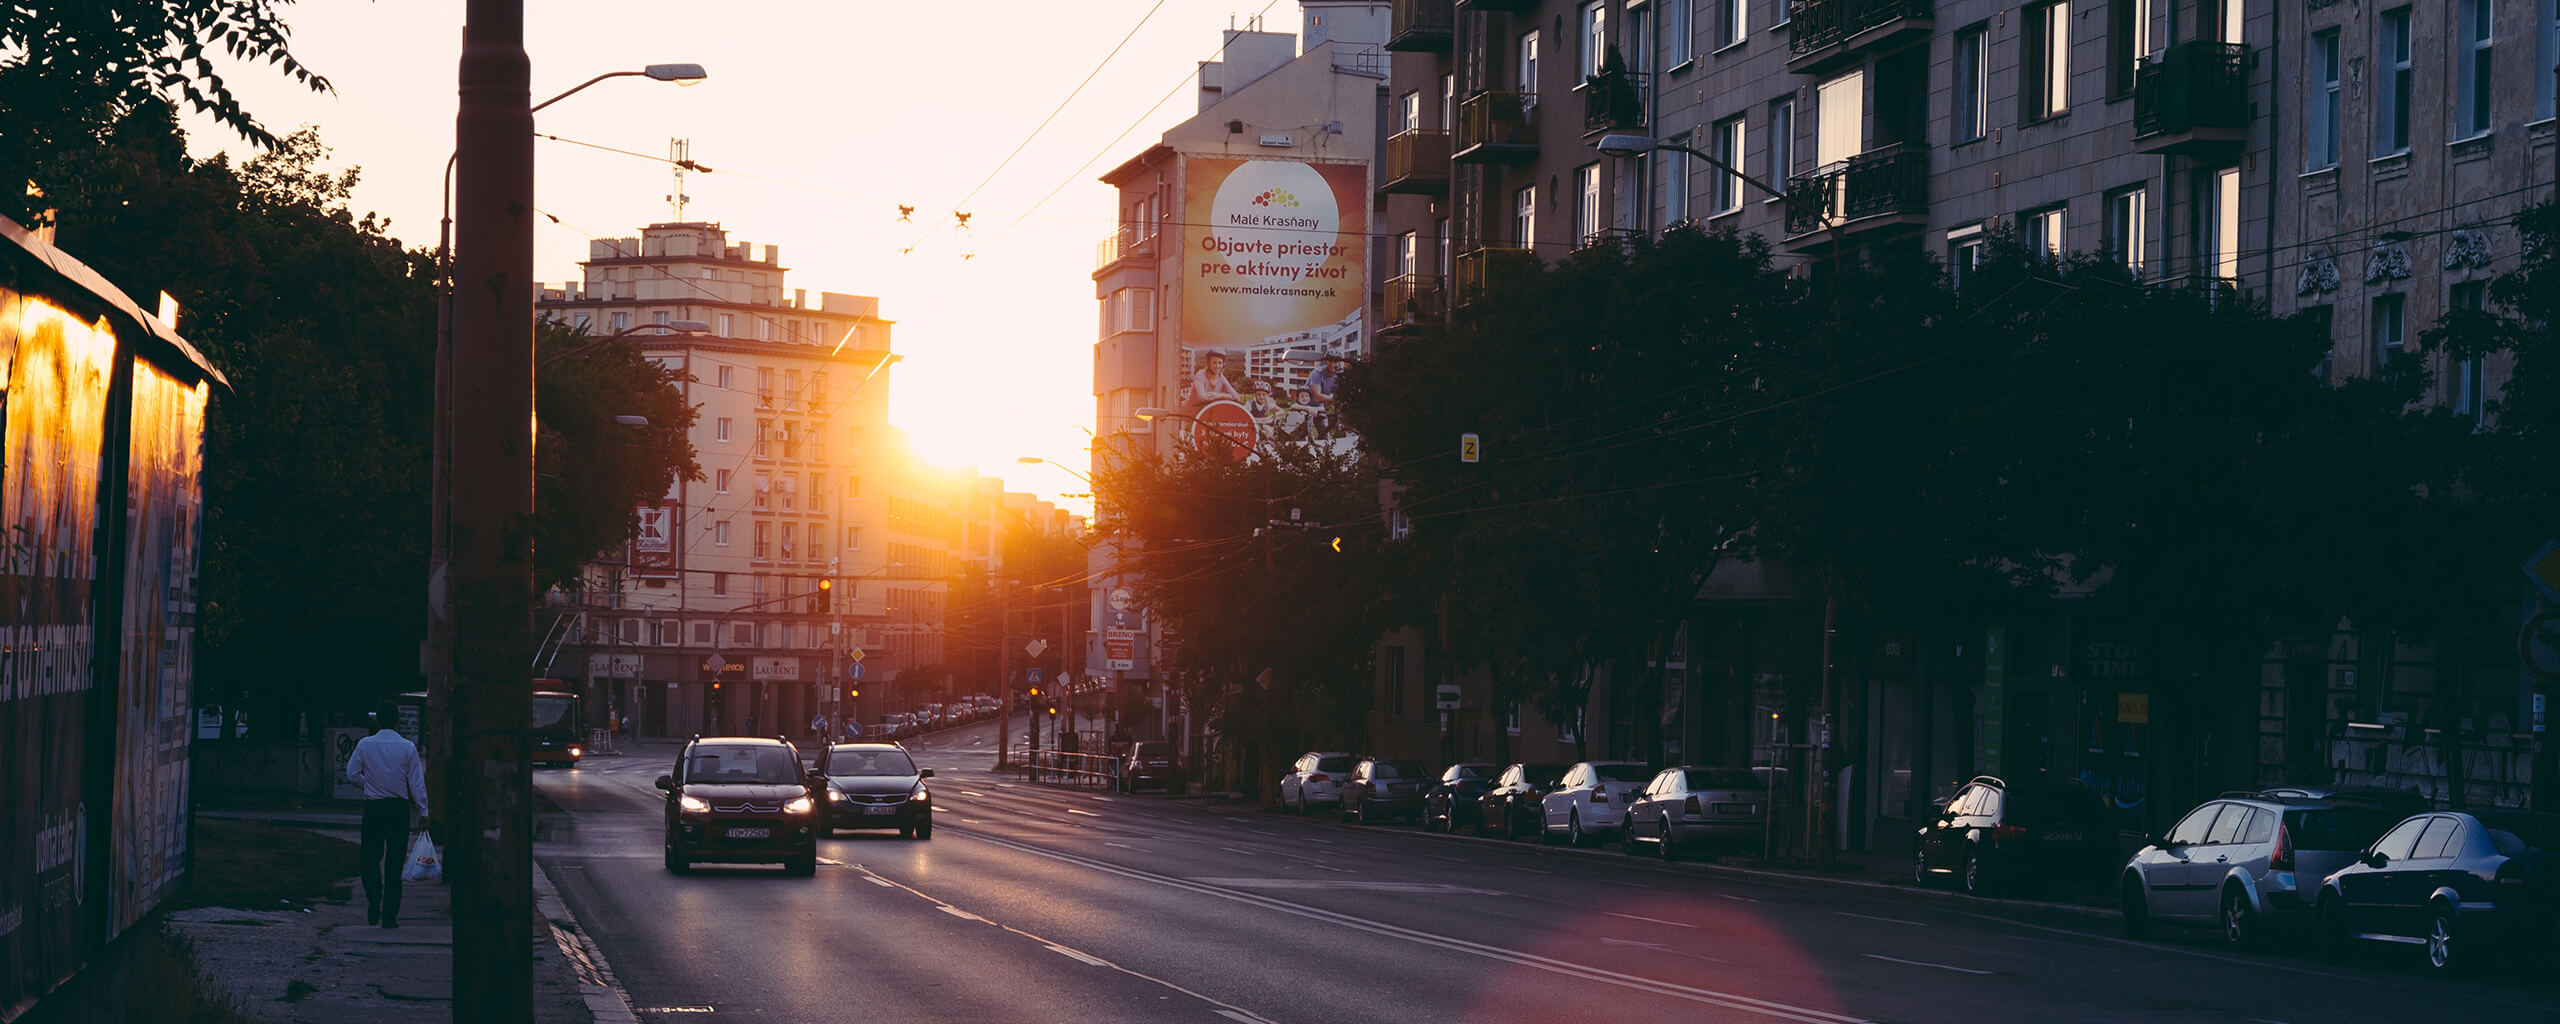 sunrise in a city